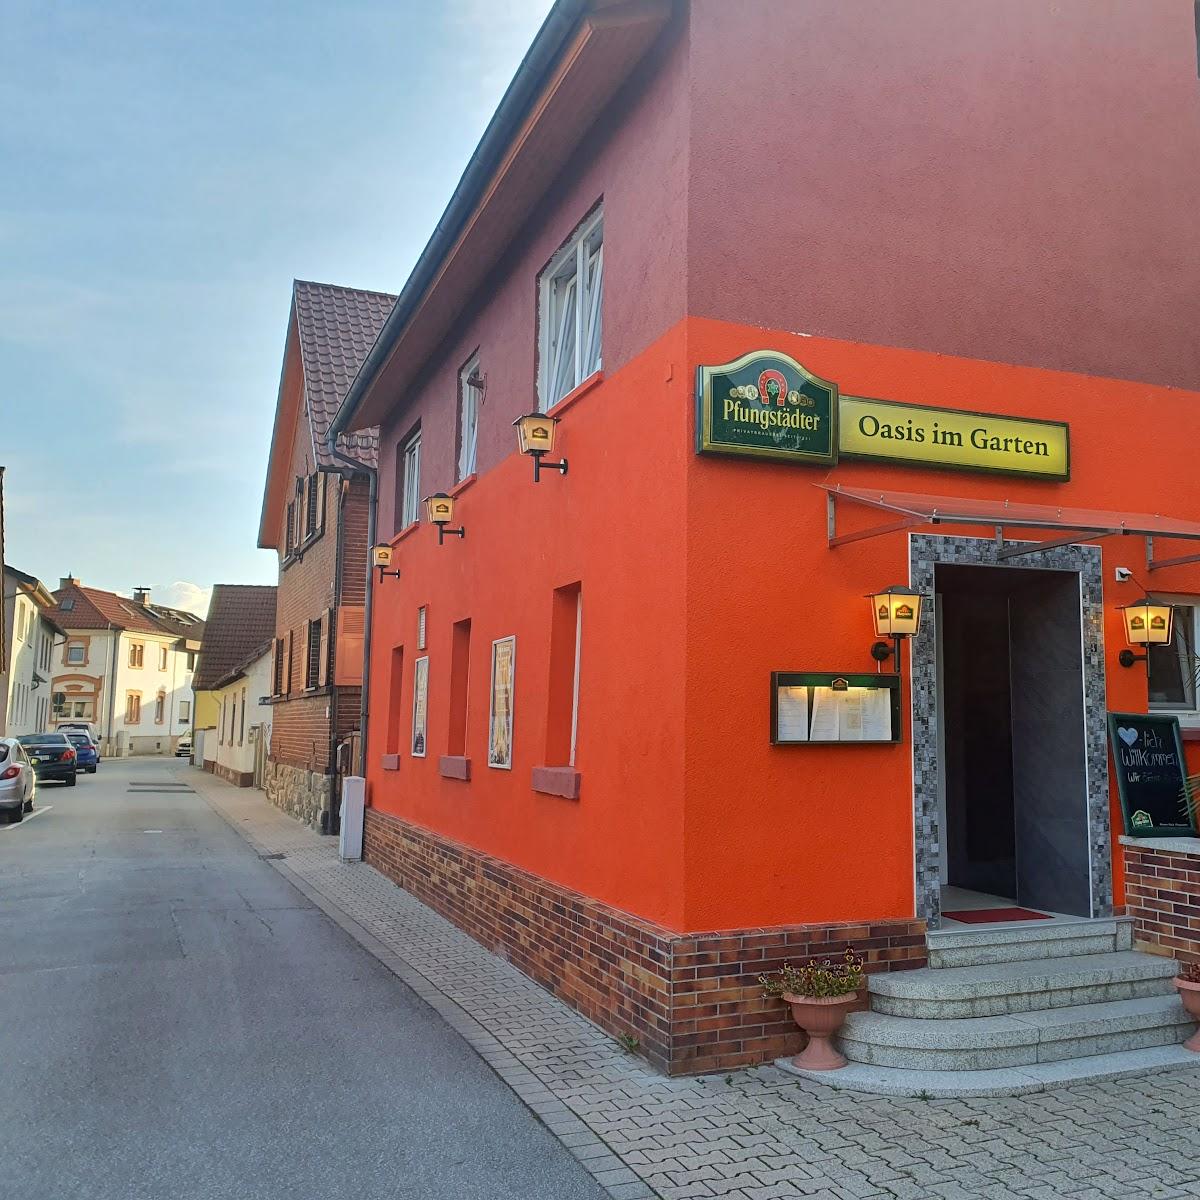 Restaurant "Oasis im Garten" in Einhausen